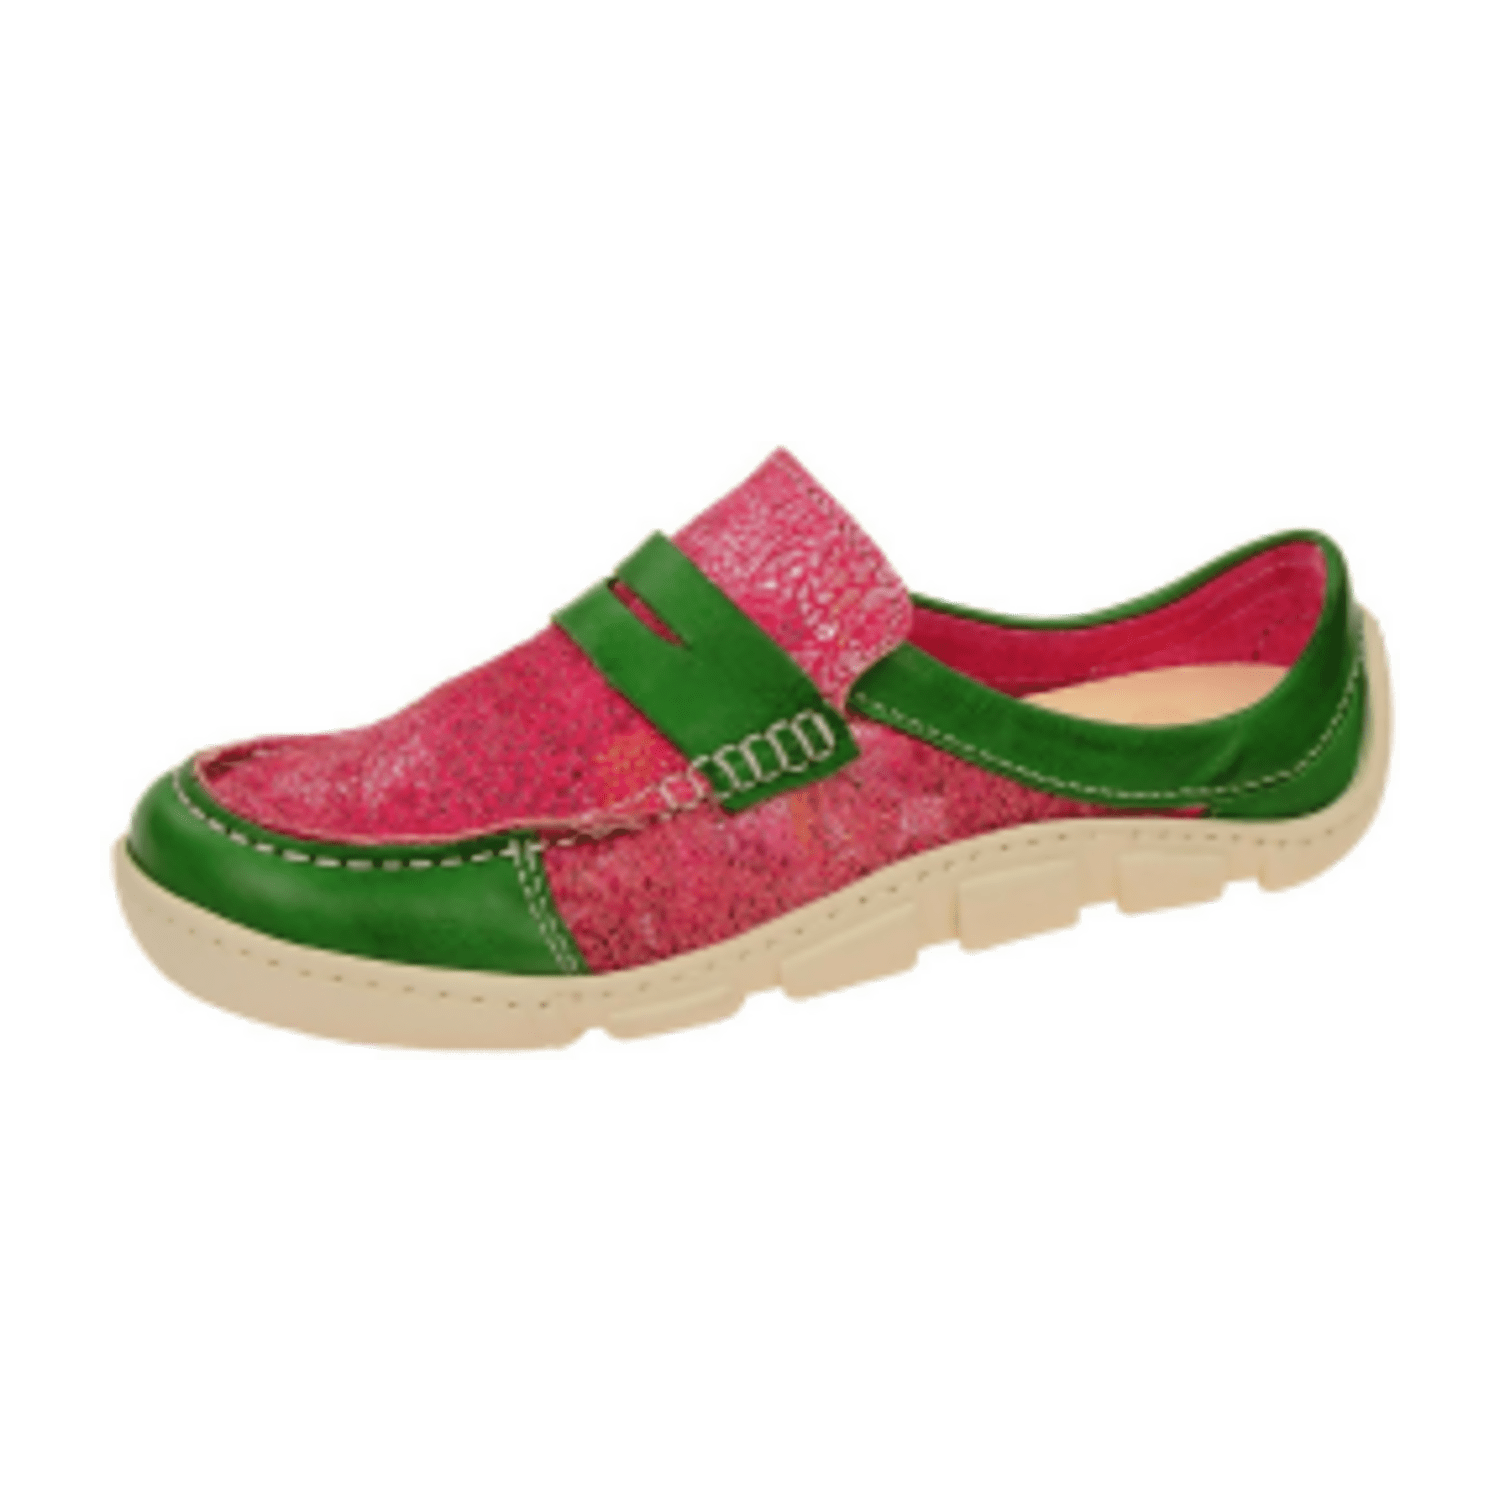 Eject Flight Schuhe rot grün Damen Slipper